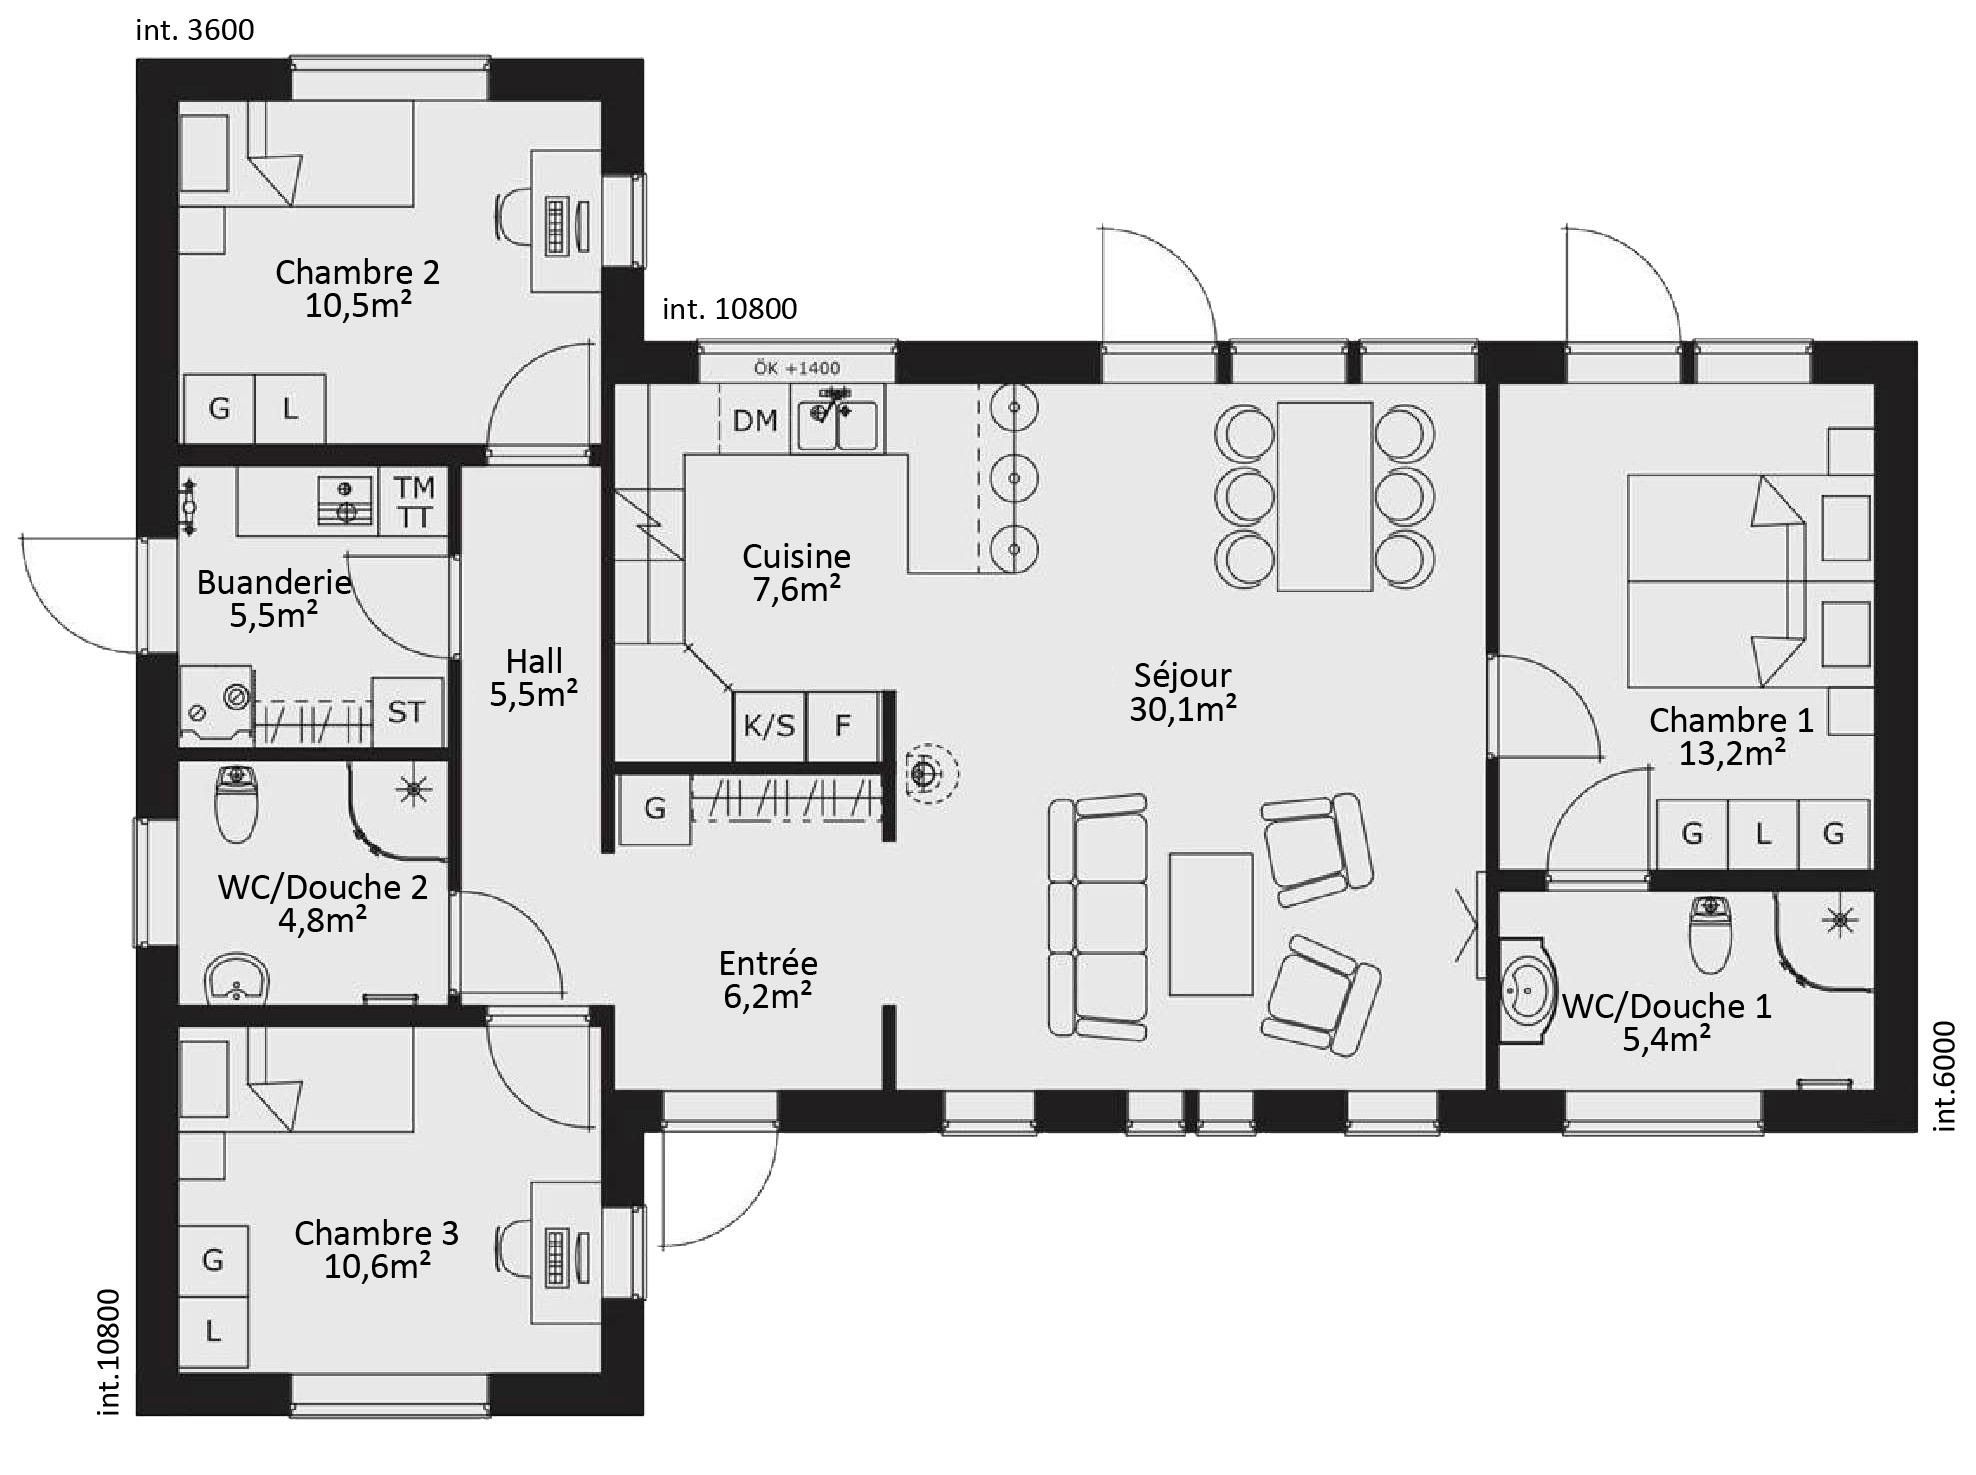 Plan de maison moderne plain pied 4 chambres